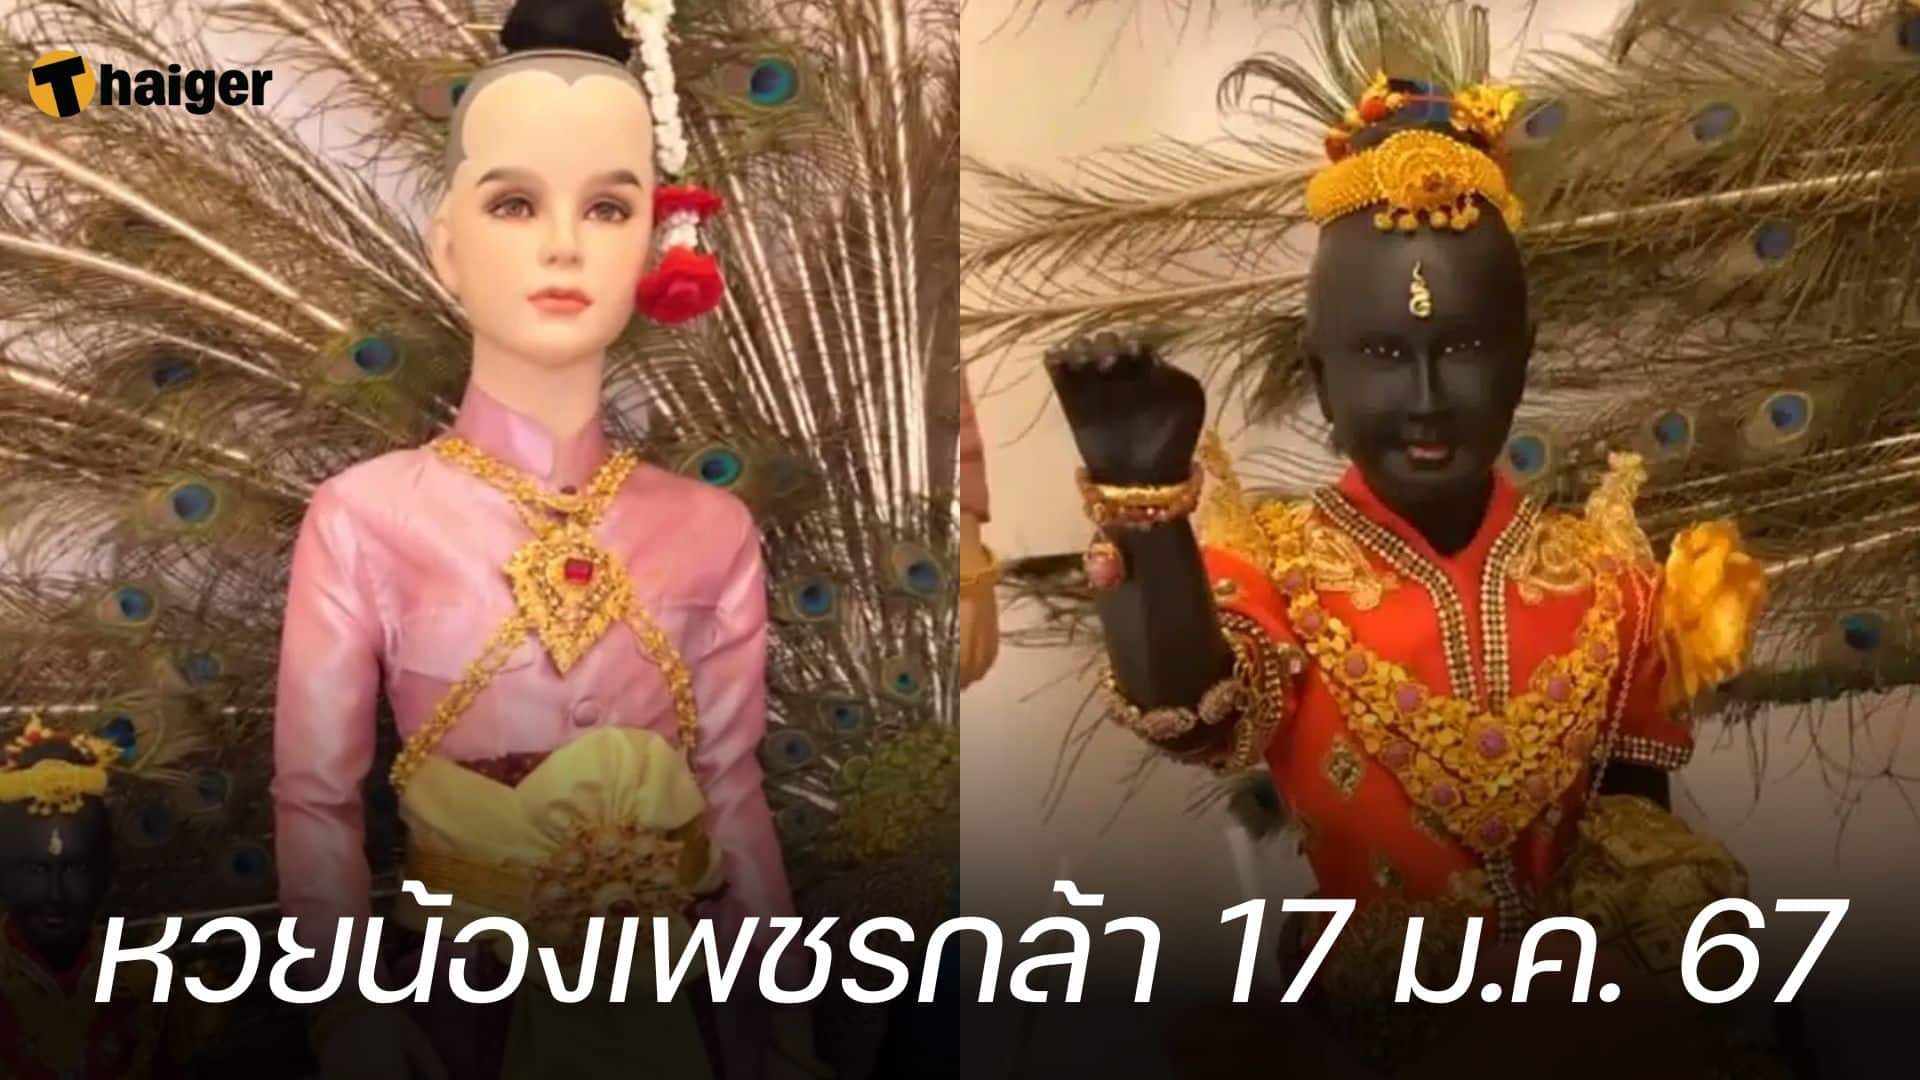 เลขปิงปอง น้องเพชรกล้า เด็กชายนำโชค ลุ้นเข้าหวยงวดแรกของปี 17 01 67 | Thaiger ข่าวไทย